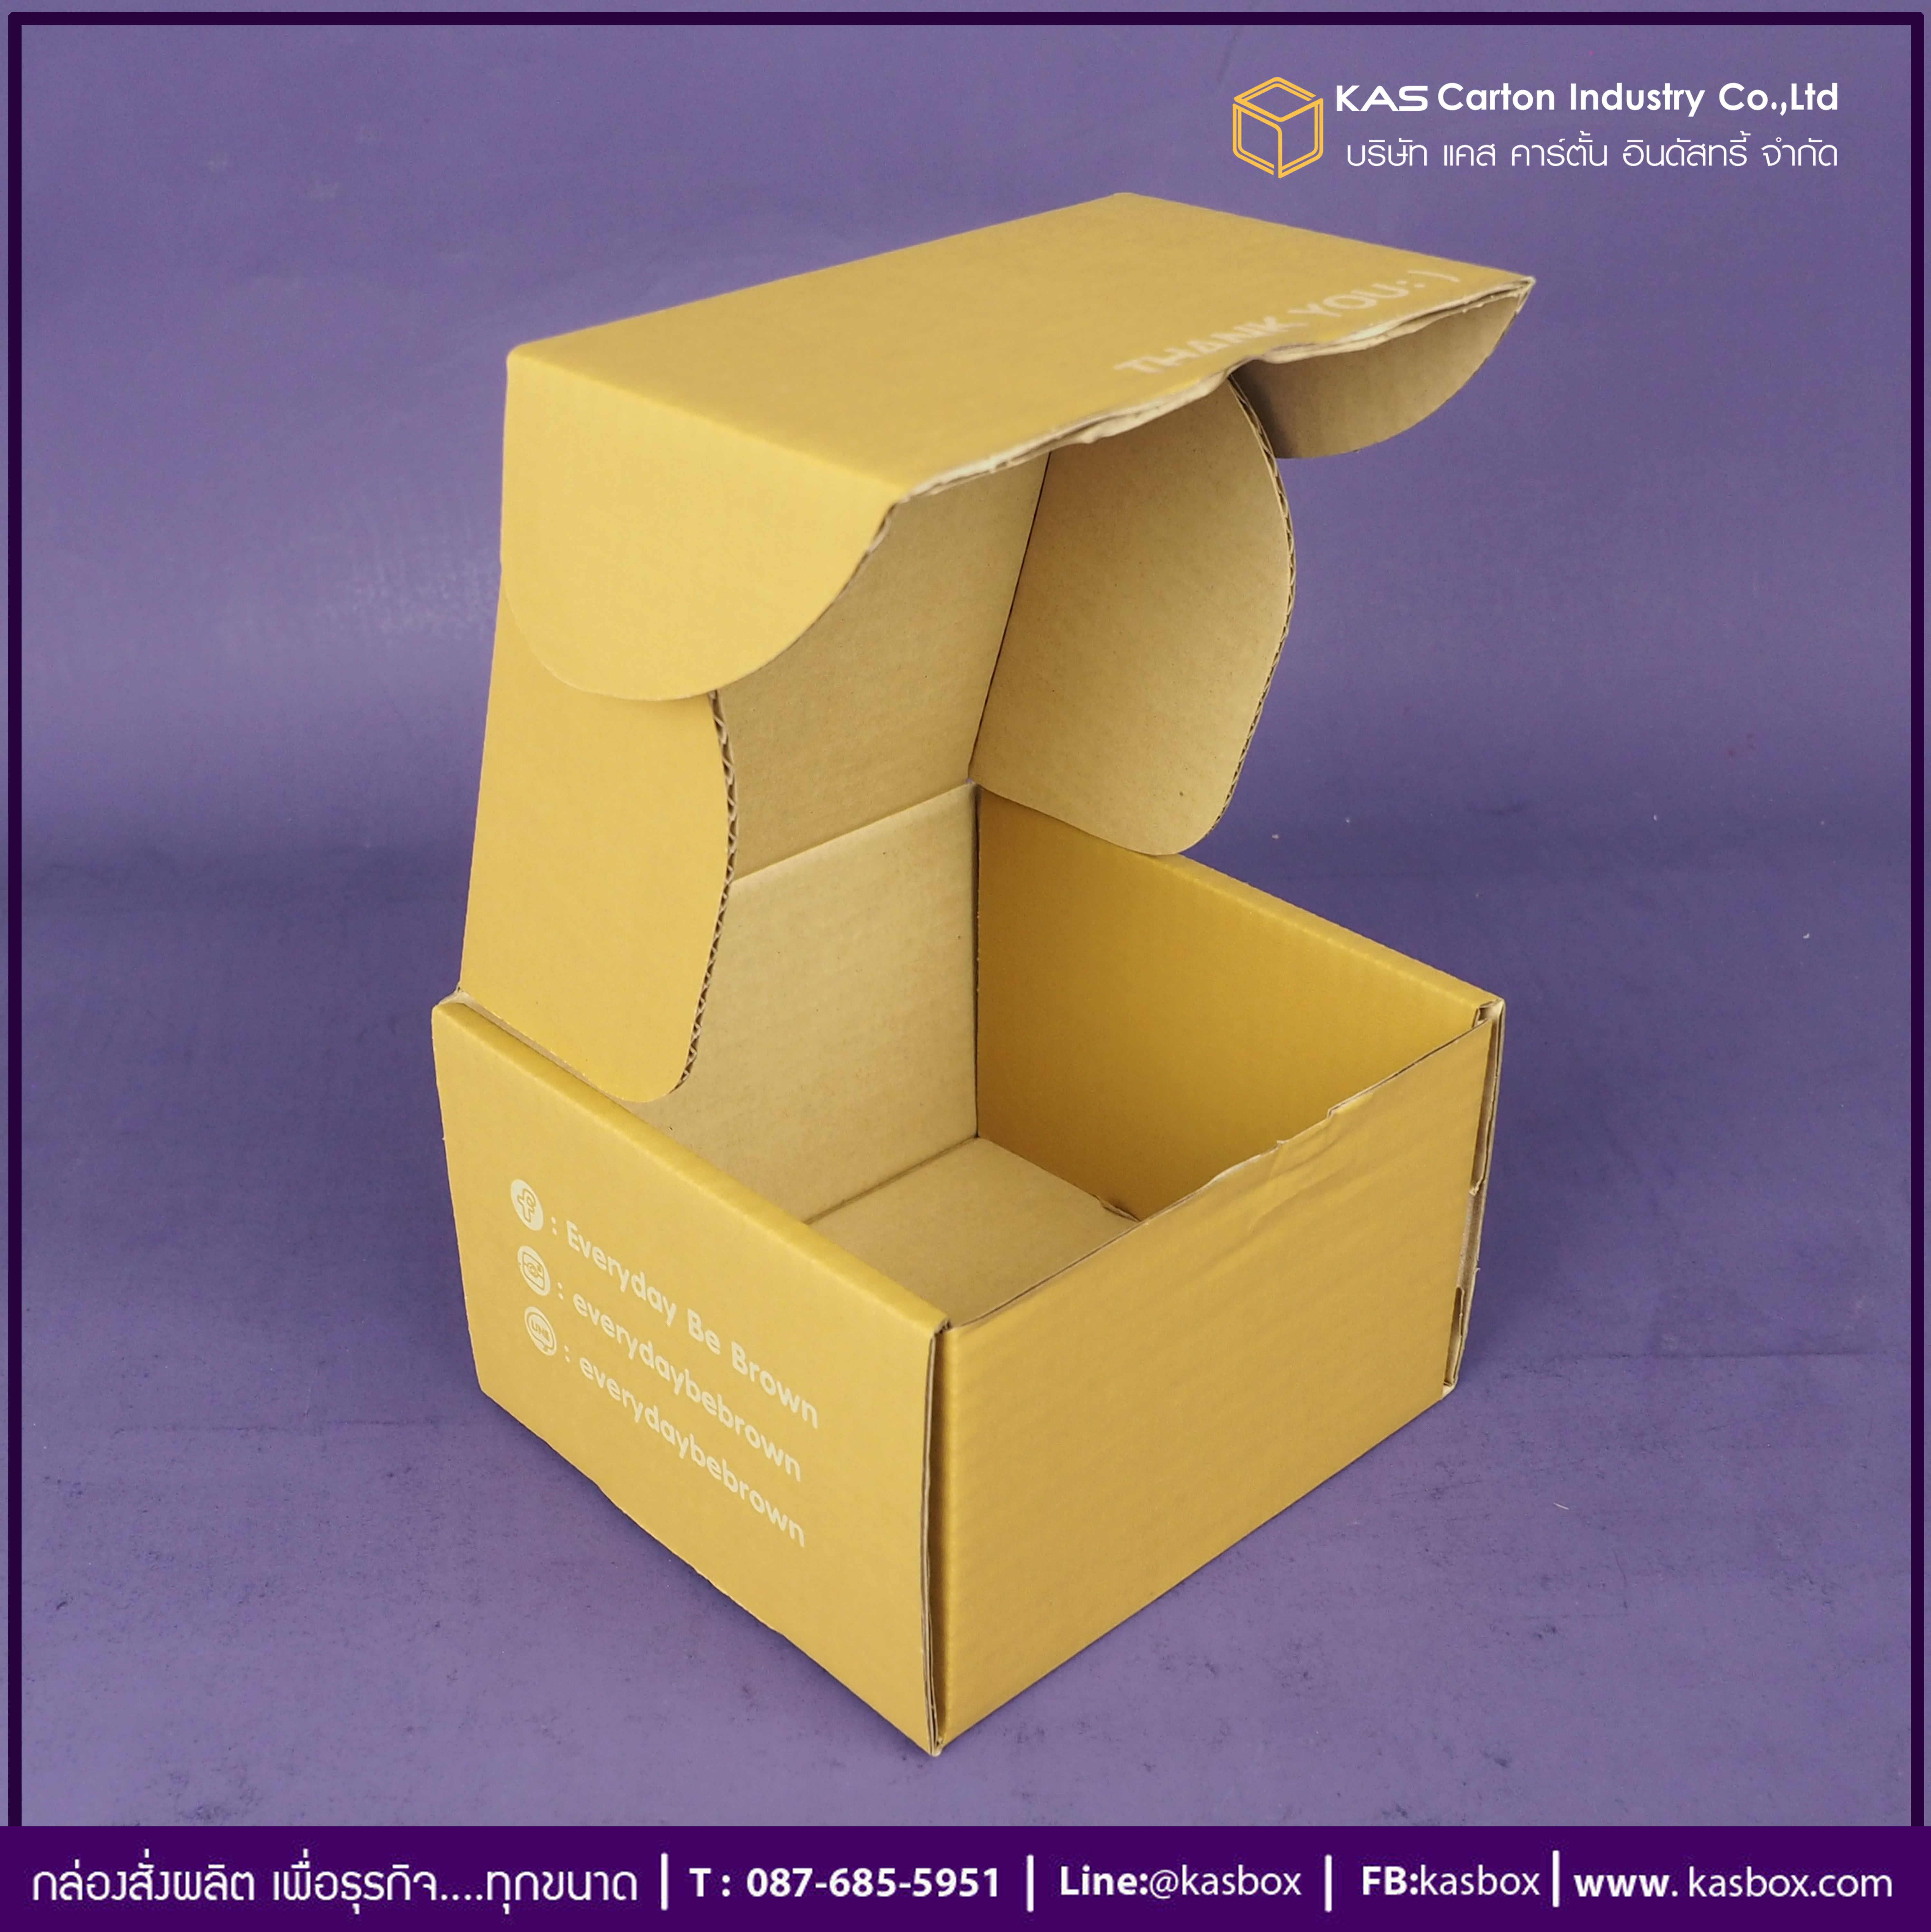 กล่องลูกฟูก สำเร็จรูป และ สั่งผลิต ตามความต้องการลูกค้า กล่องกระดาษลูกฟูก กล่องใส่ขนมบราวนี่